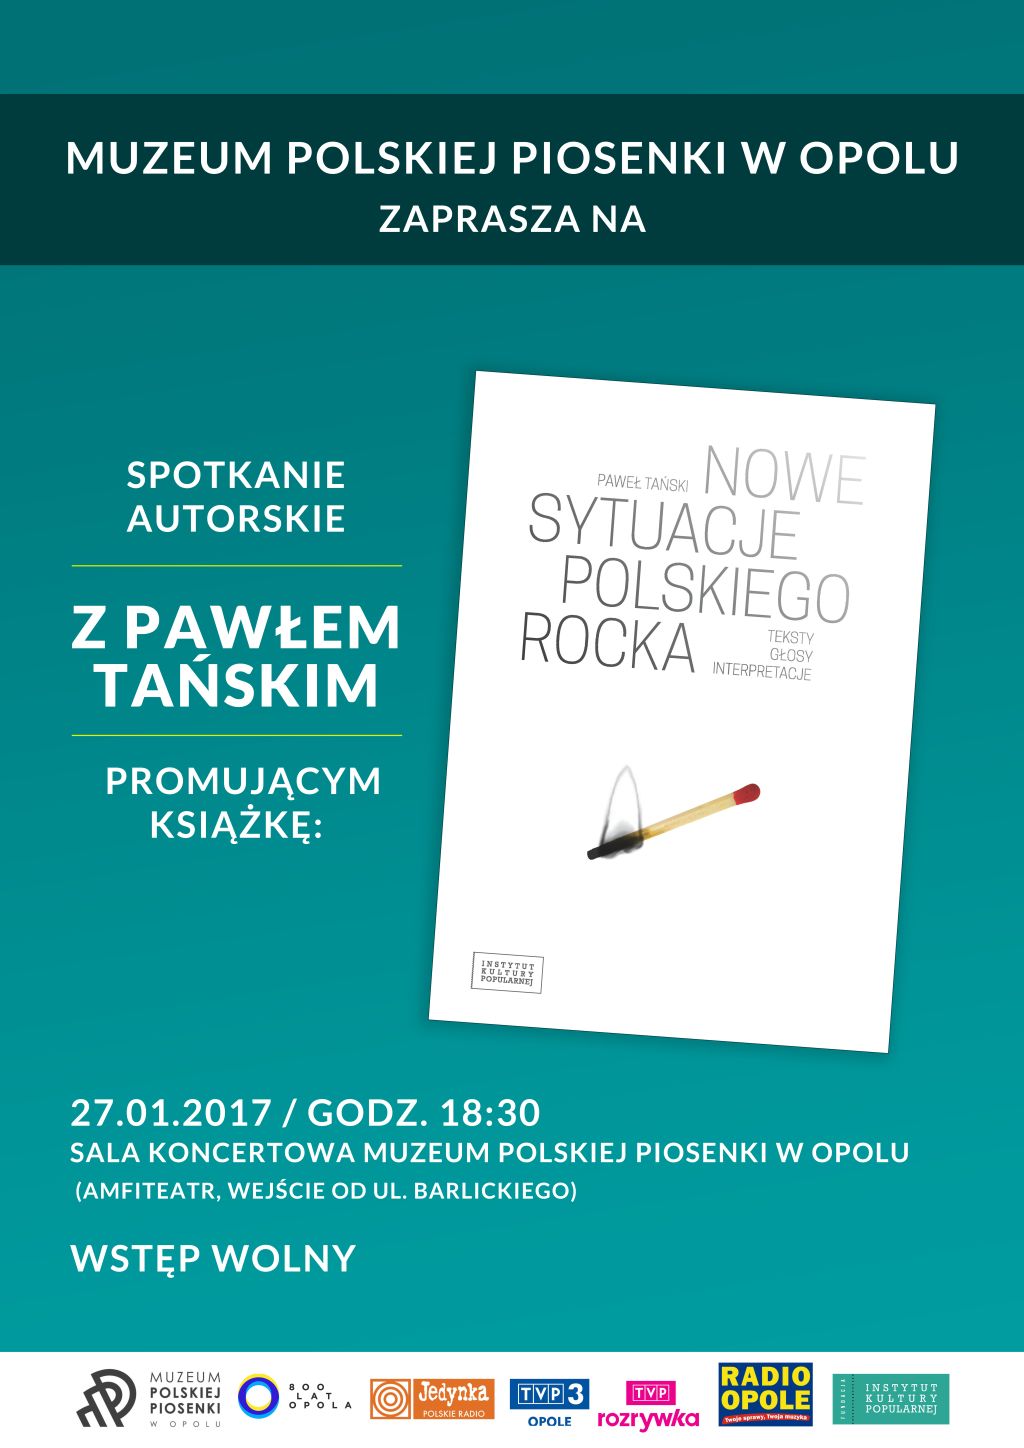 W najbliższy piątek (27.01) w Muzeum Polskiej Piosenki w Opolu będzie okazja spotkania z Pawłem Tańskim